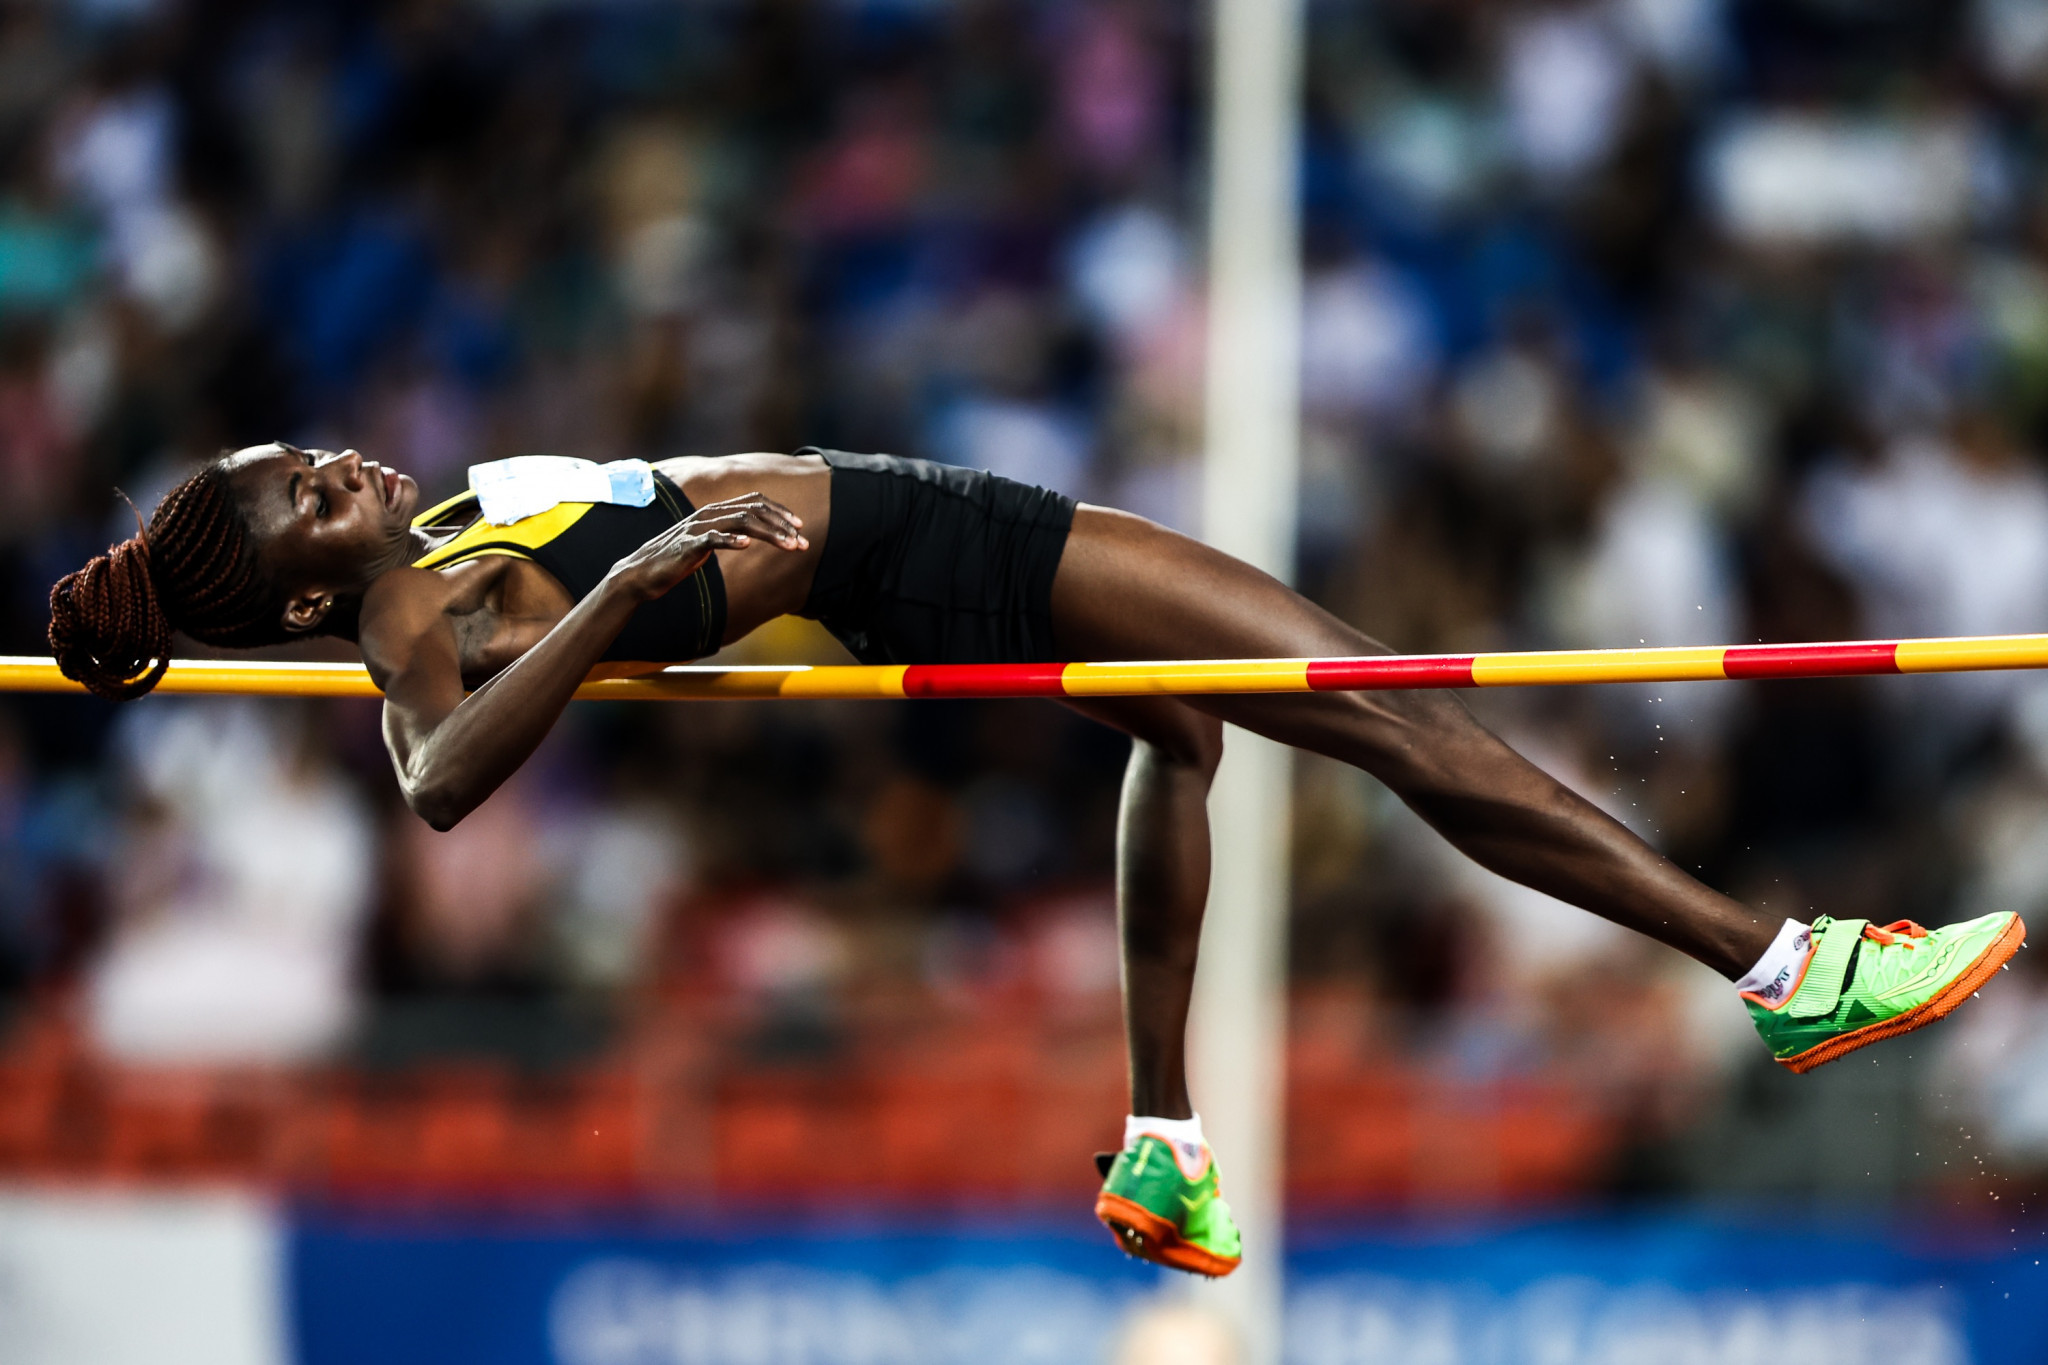 Rose Yeboah rose highest to win women's high jump gold for Ghana ©Chengdu 2021